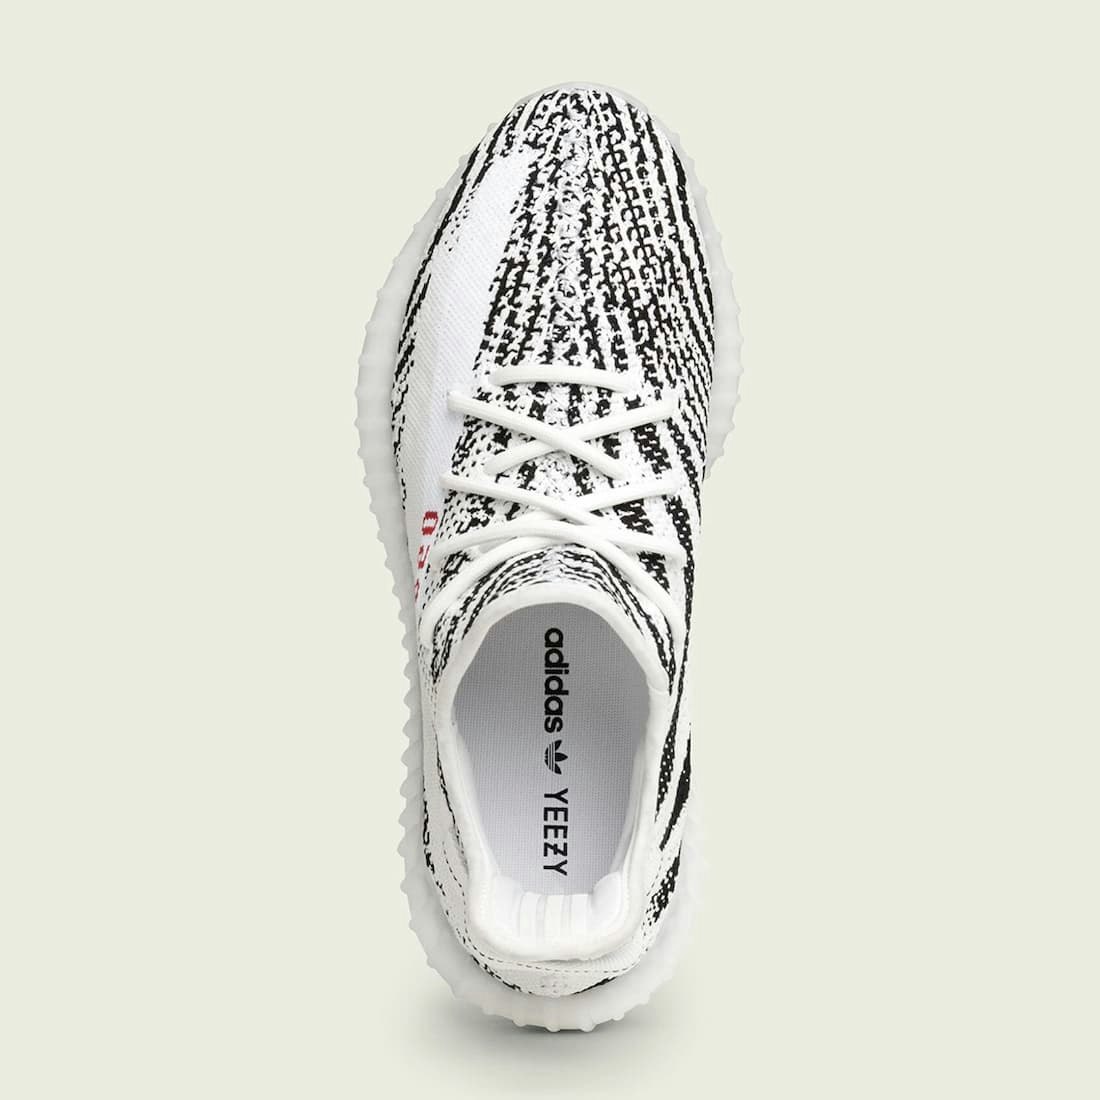 adidas Yeezy Boost 350 V2 “Zebra” Restock